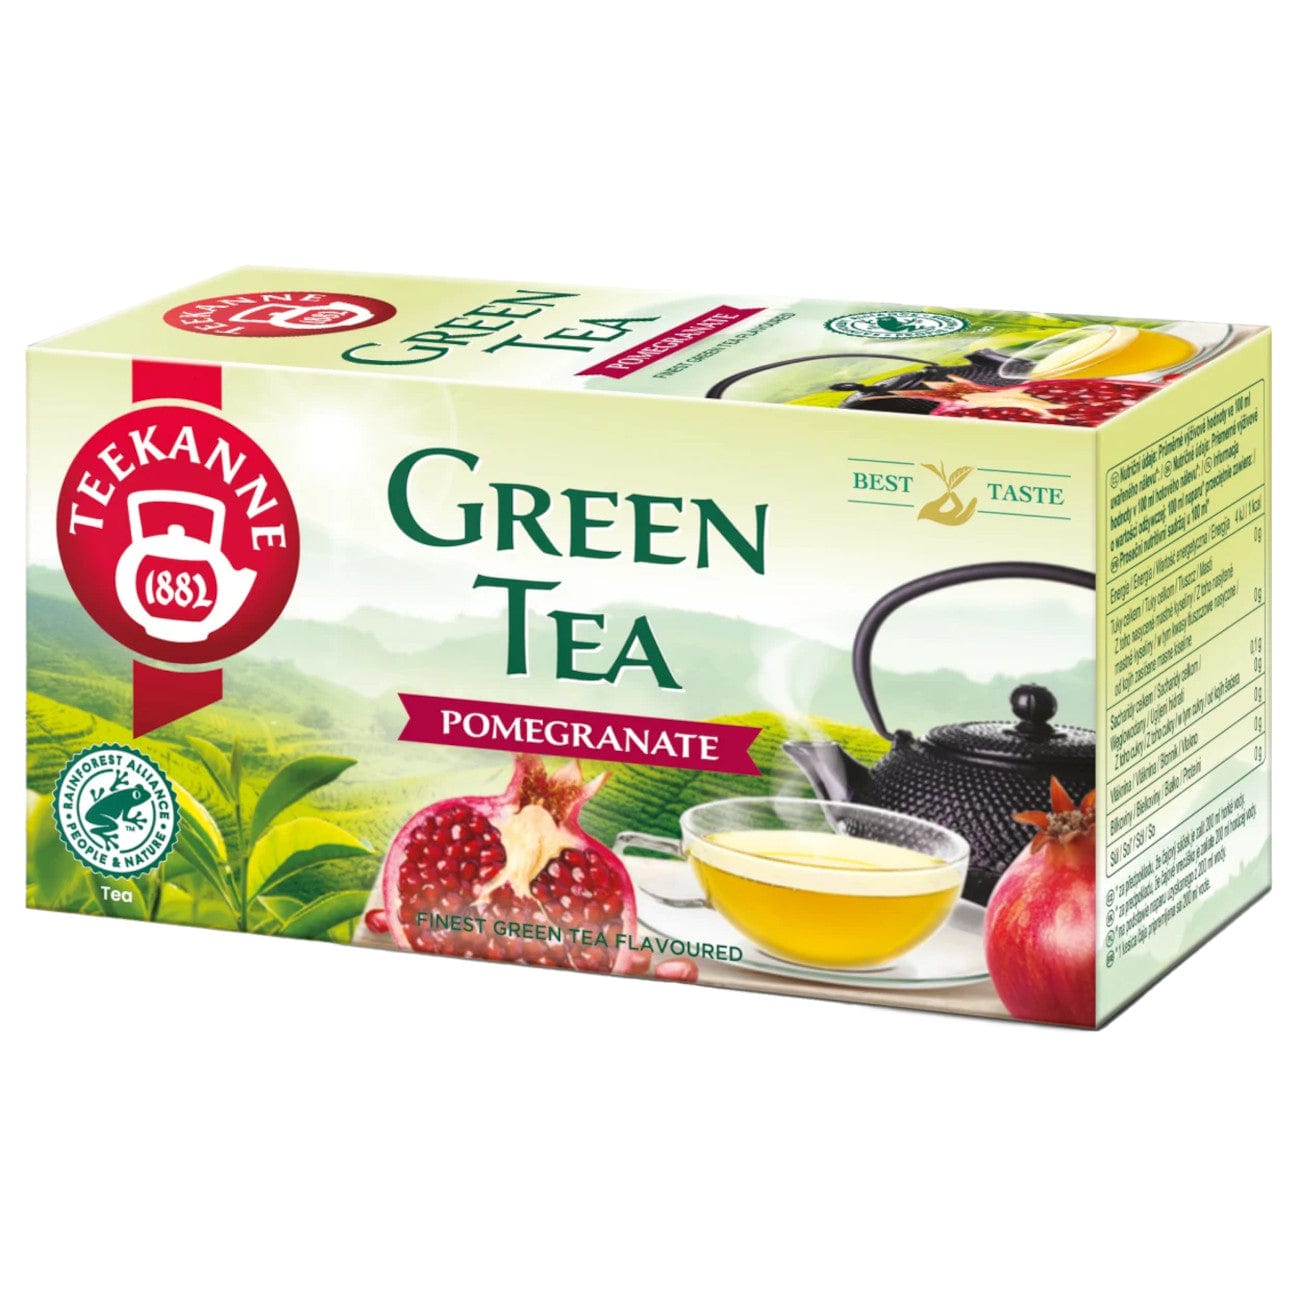 Produkt TEEKANE Herbata zielona TEEKANNE Green Tea Pomegranate granat 20 szt 000593